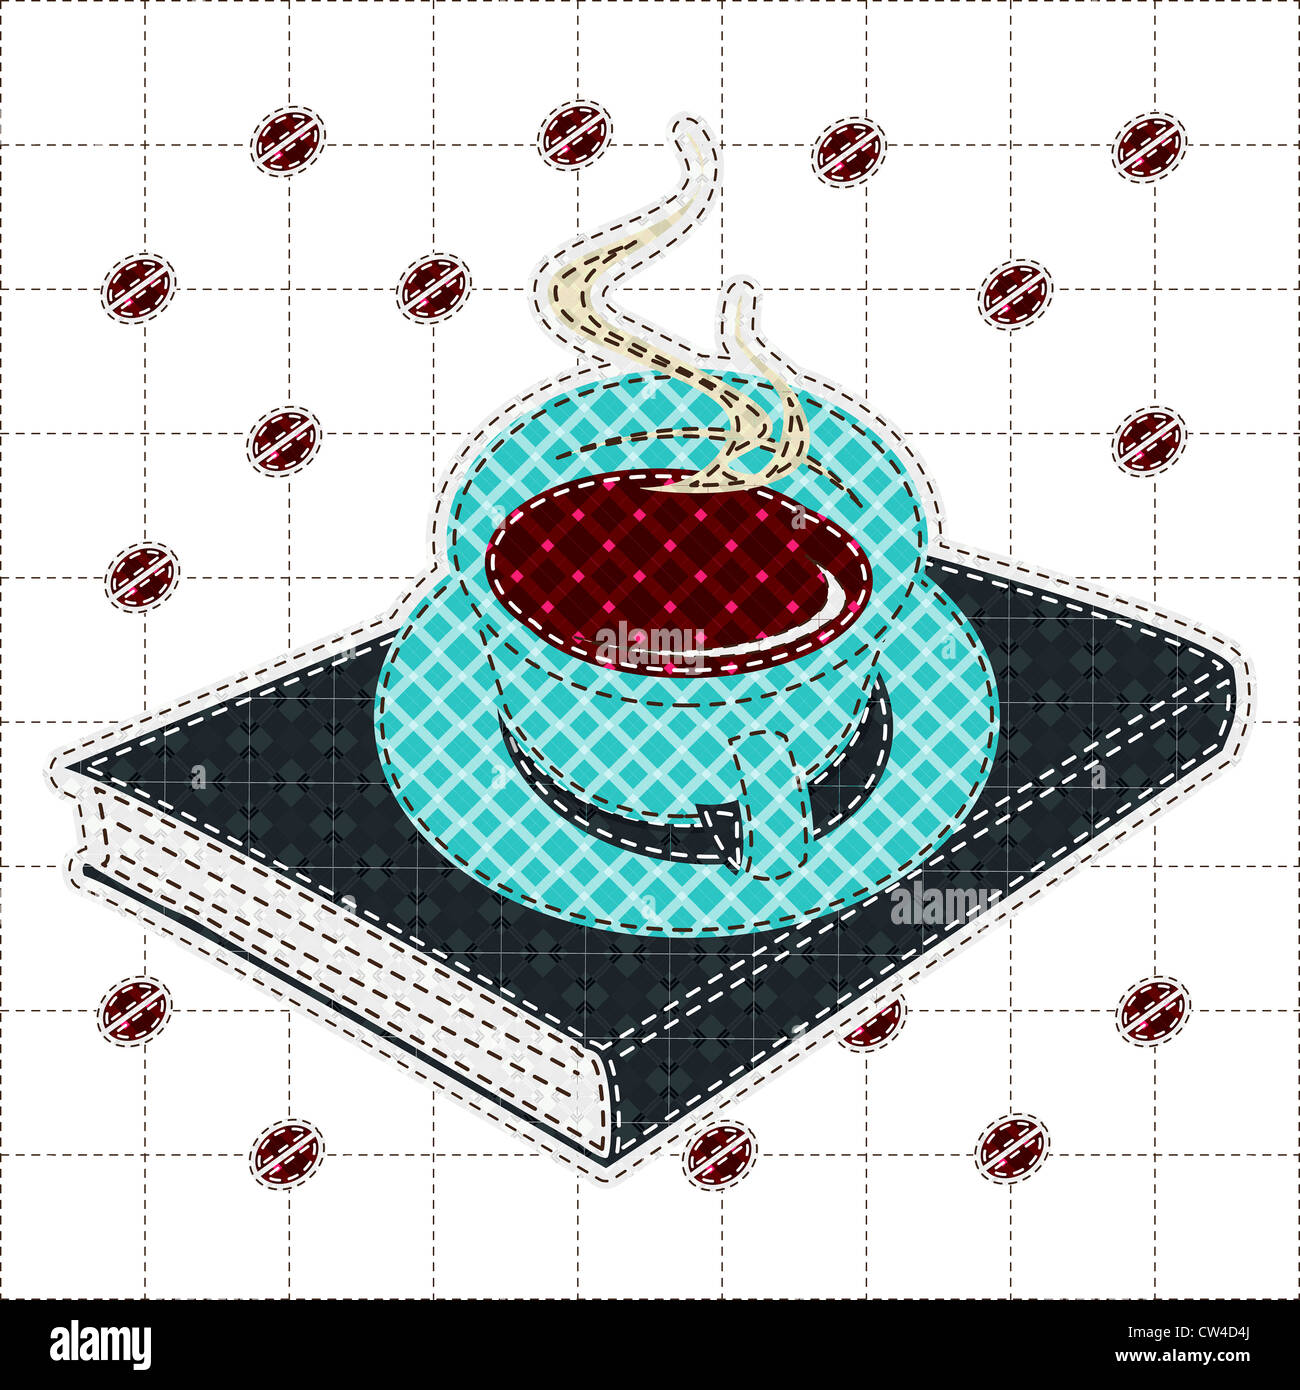 Illustrations mosaïque de tasse à café et réservez Banque D'Images